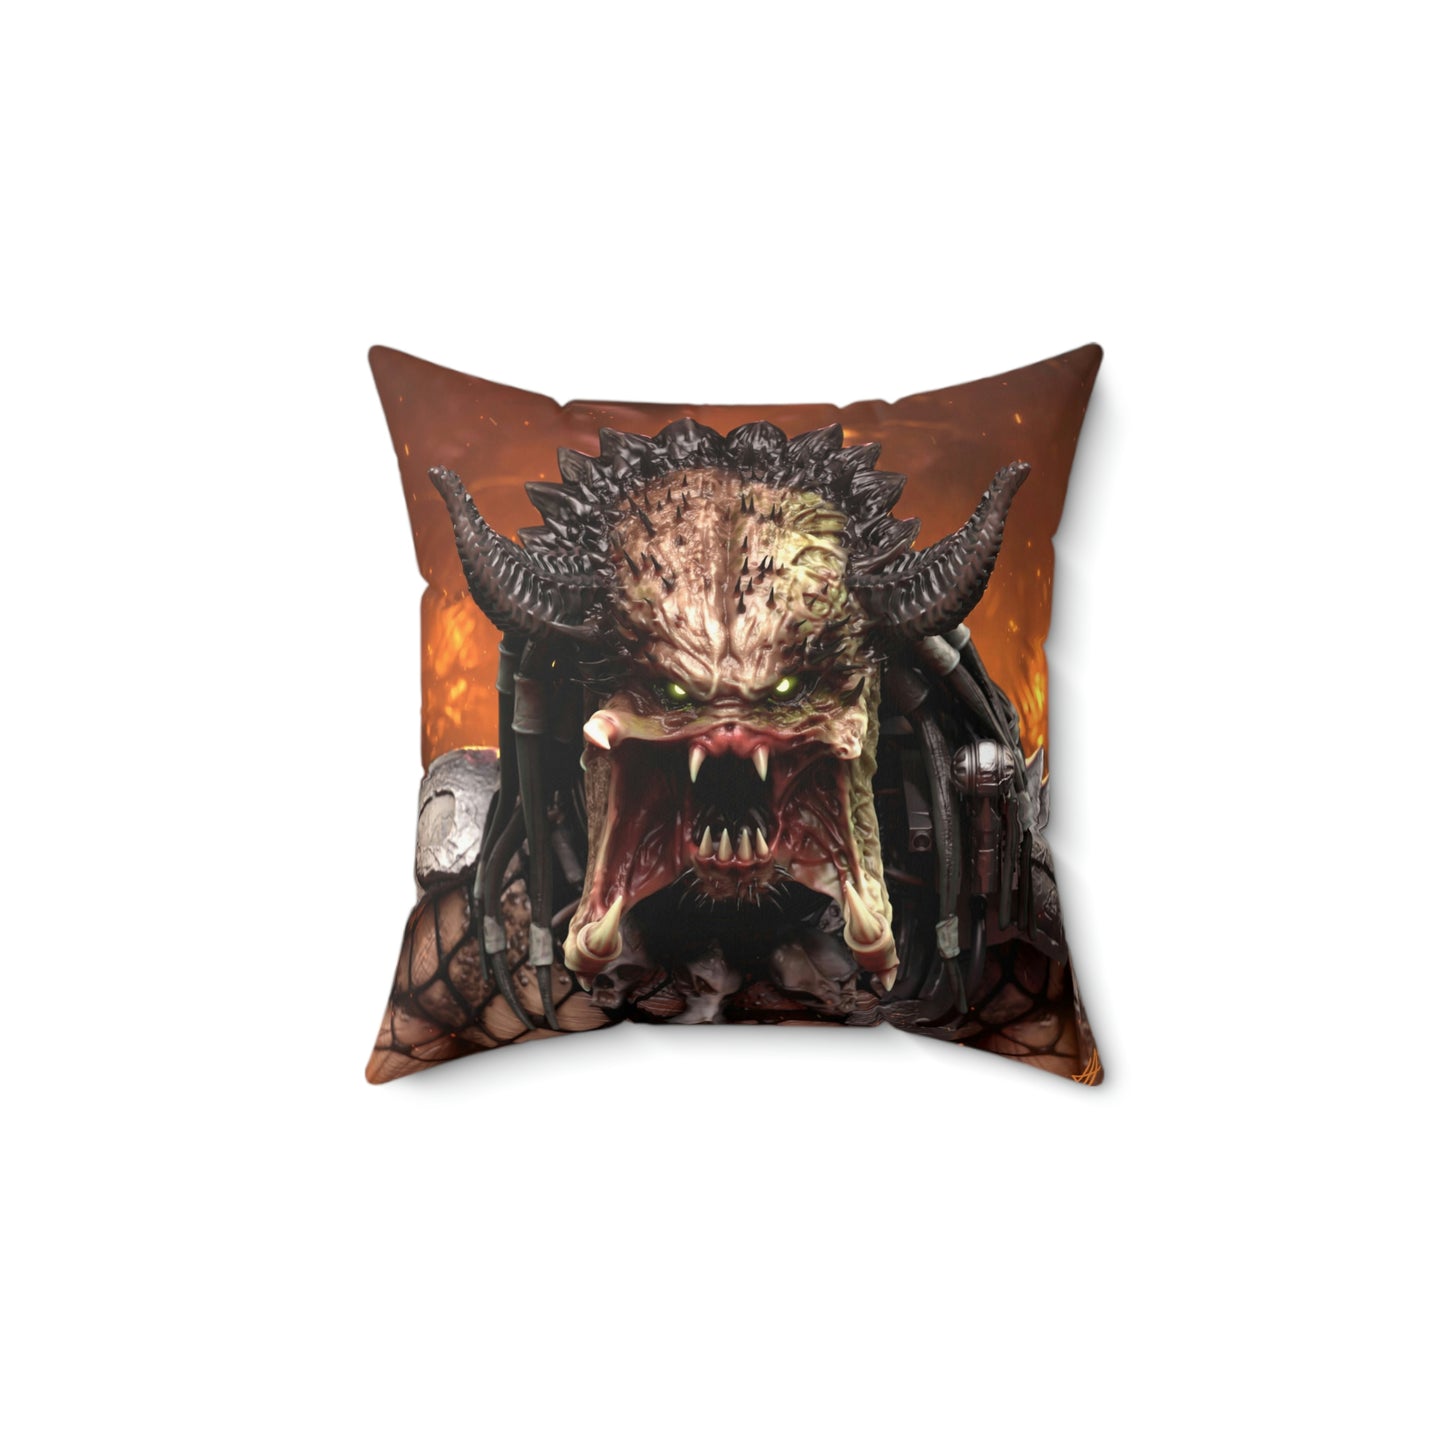 Predator Legendary Holder Spun Polyester Square Pillow